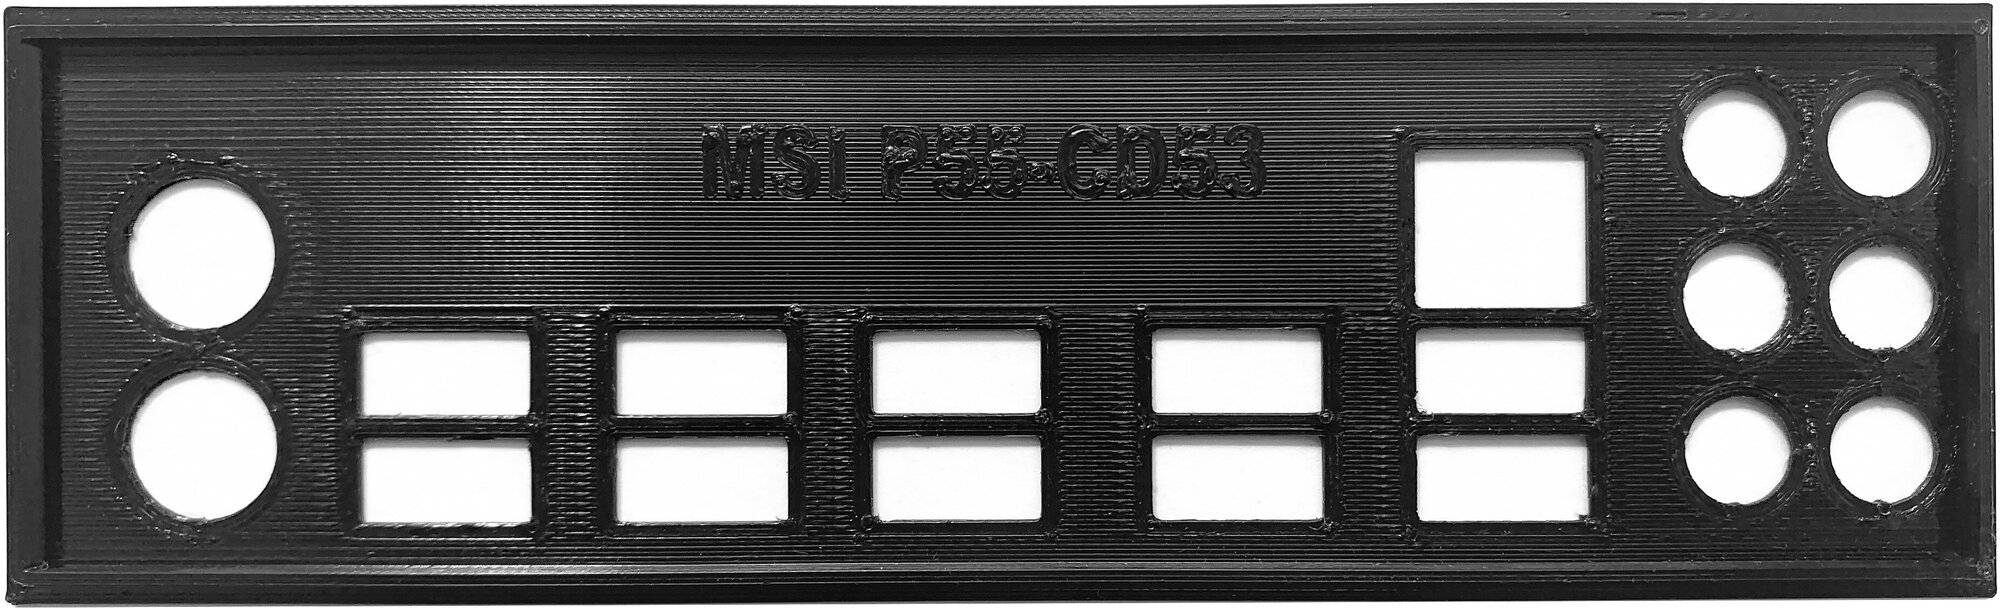 Заглушка для компьютерного корпуса к материнской плате MSI P55-CD53 black